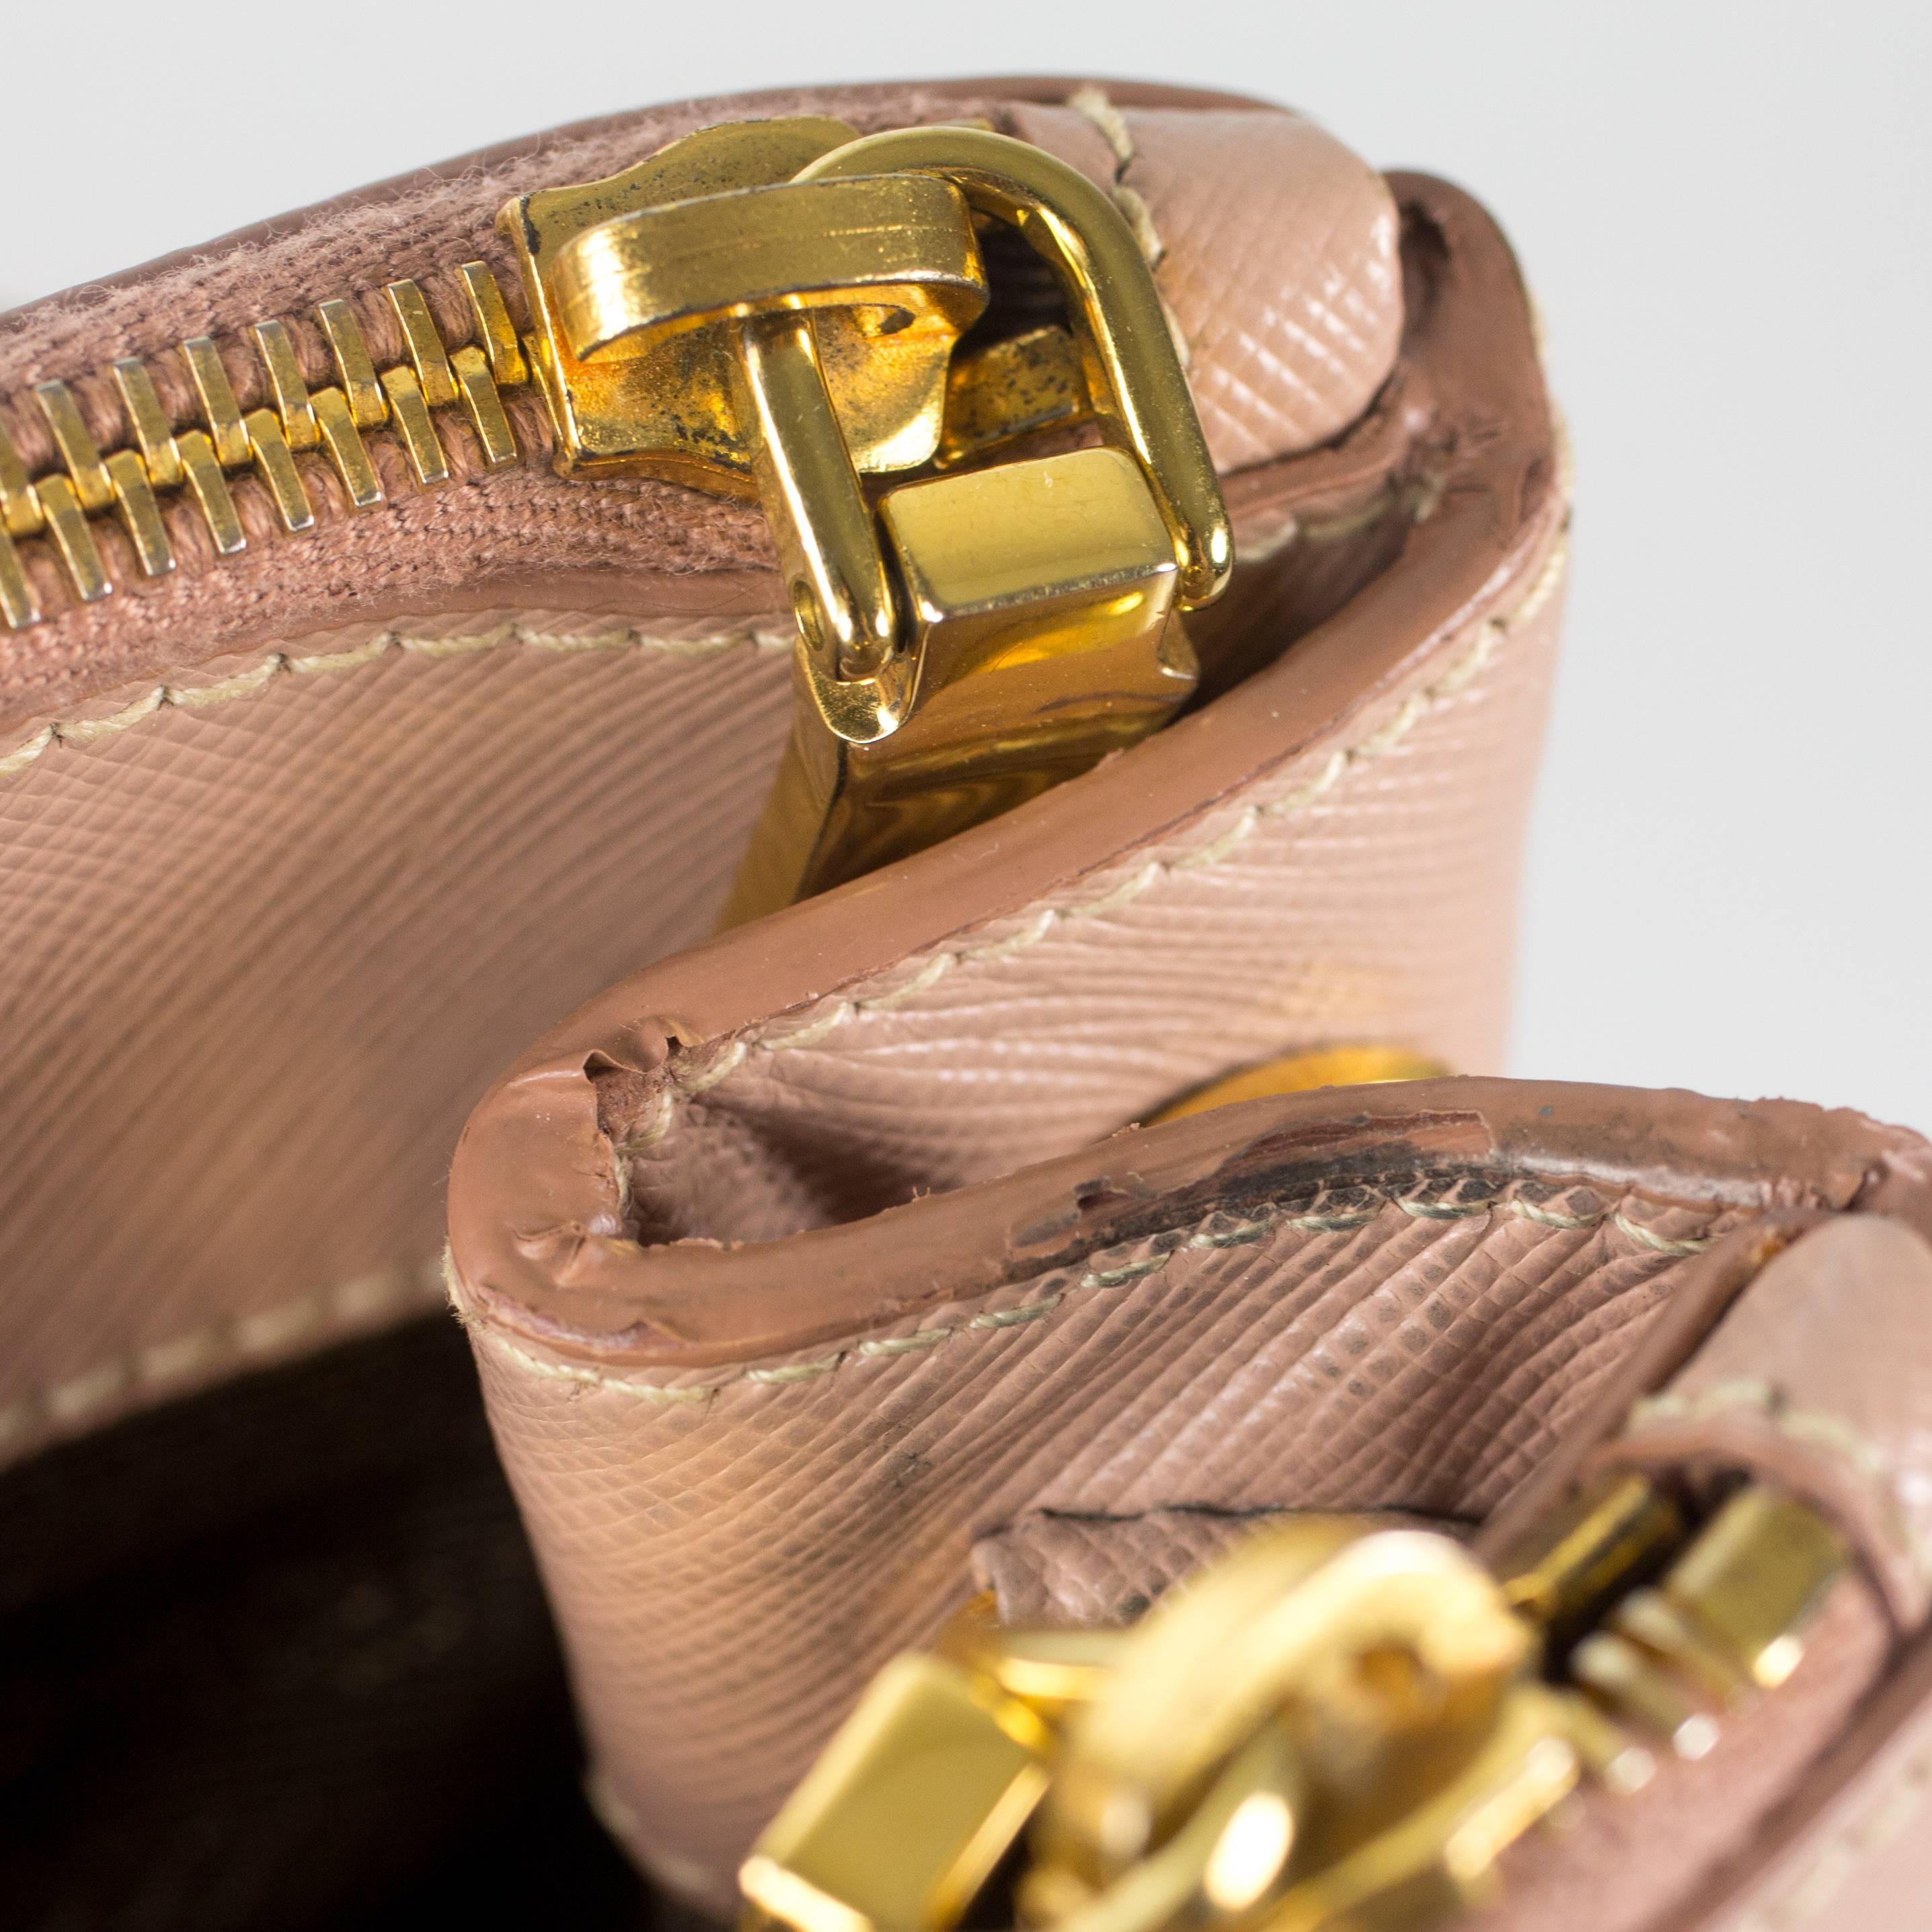 Prada Pink Saffiano Shoulder Bag - Leather Satchel Gold Handbag Tote 1